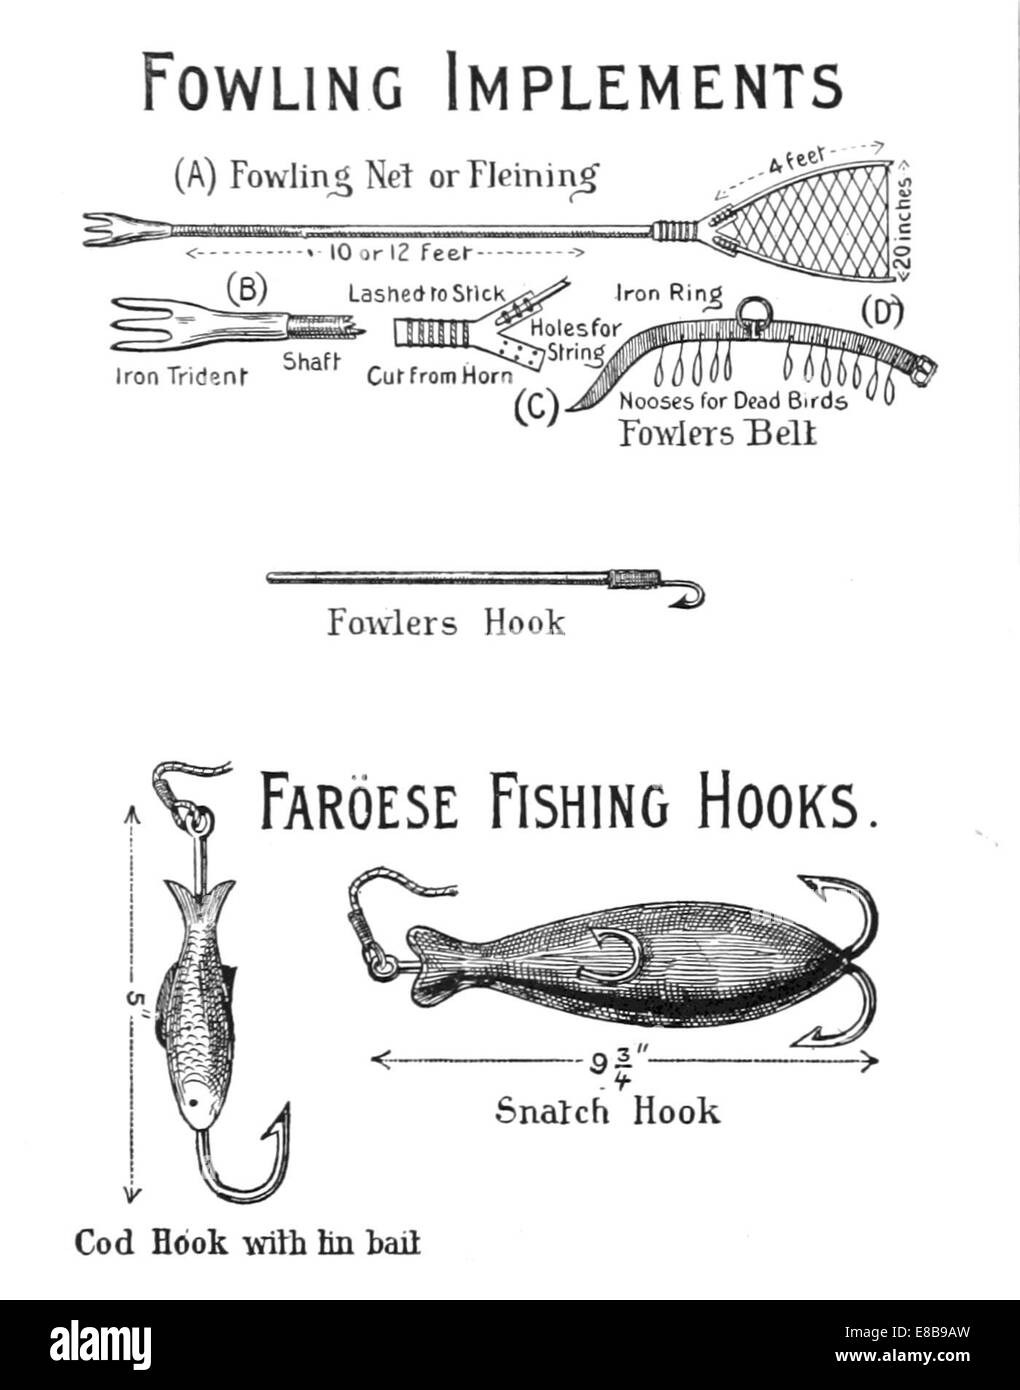 Implementos para la pesca Imágenes de stock en blanco y negro - Alamy